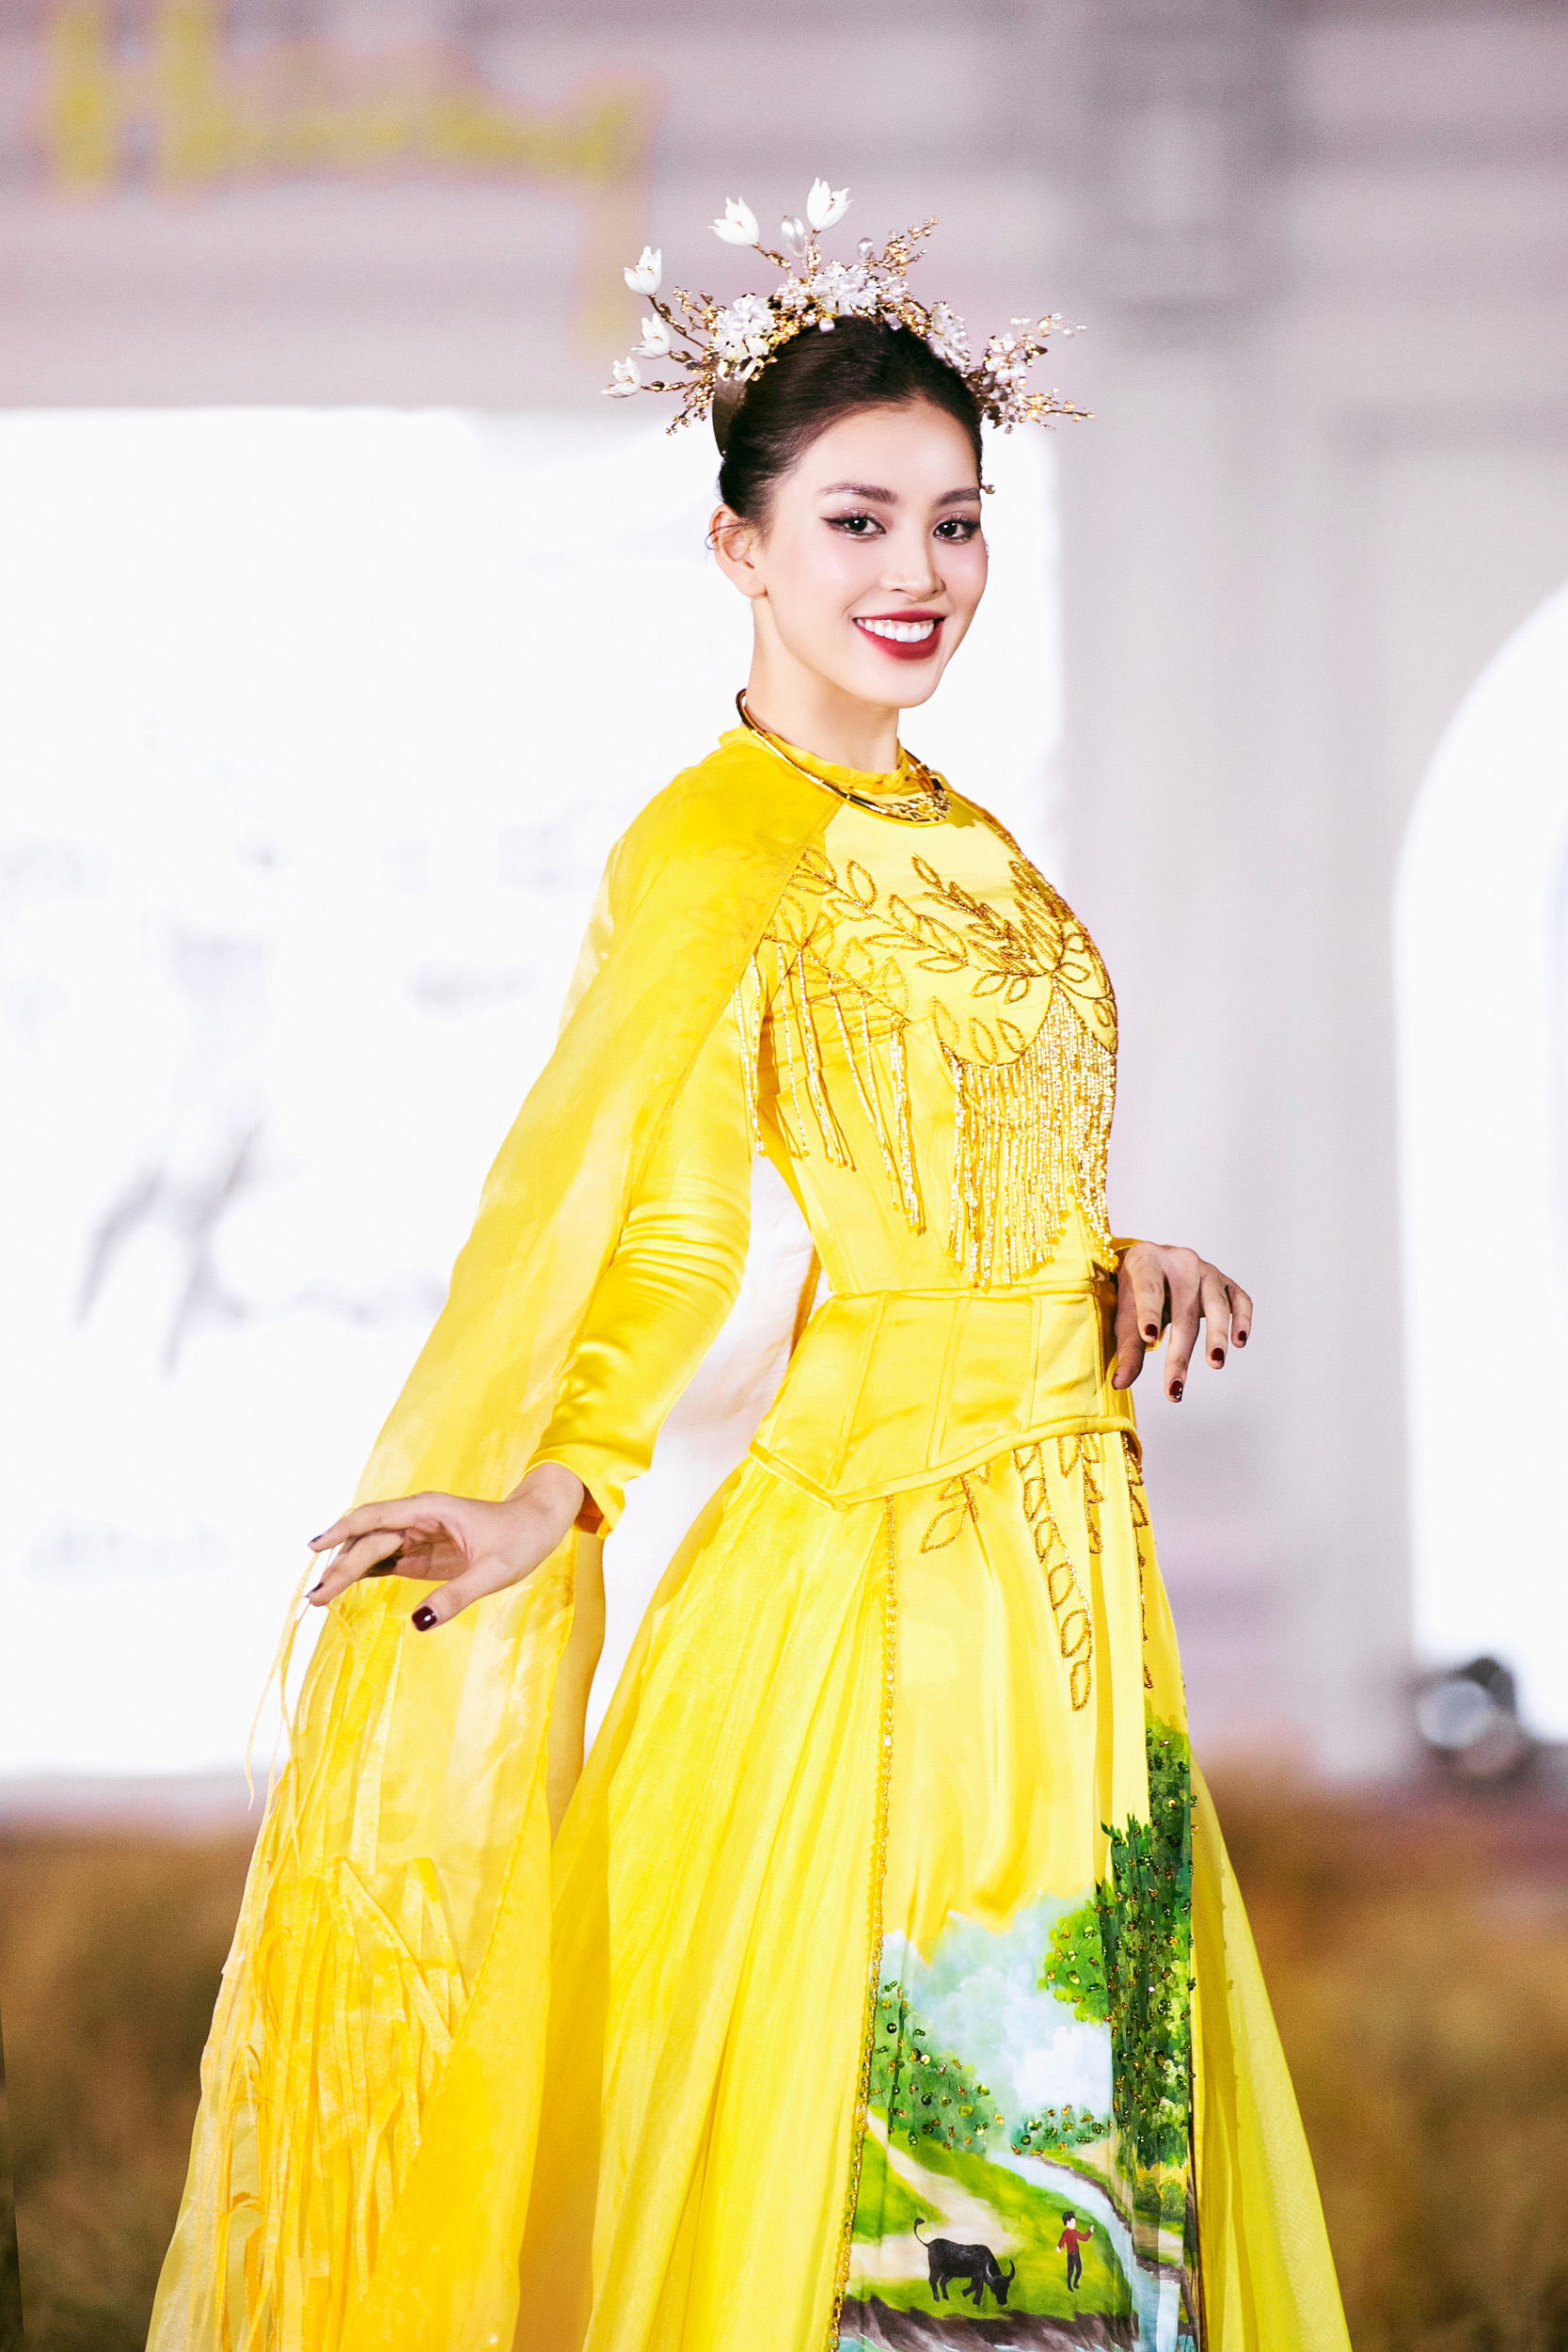 Hoa hậu Tiểu Vy, Bảo Ngọc cùng làm Vedette cho BST Ký họa quê hương - Ảnh 4.